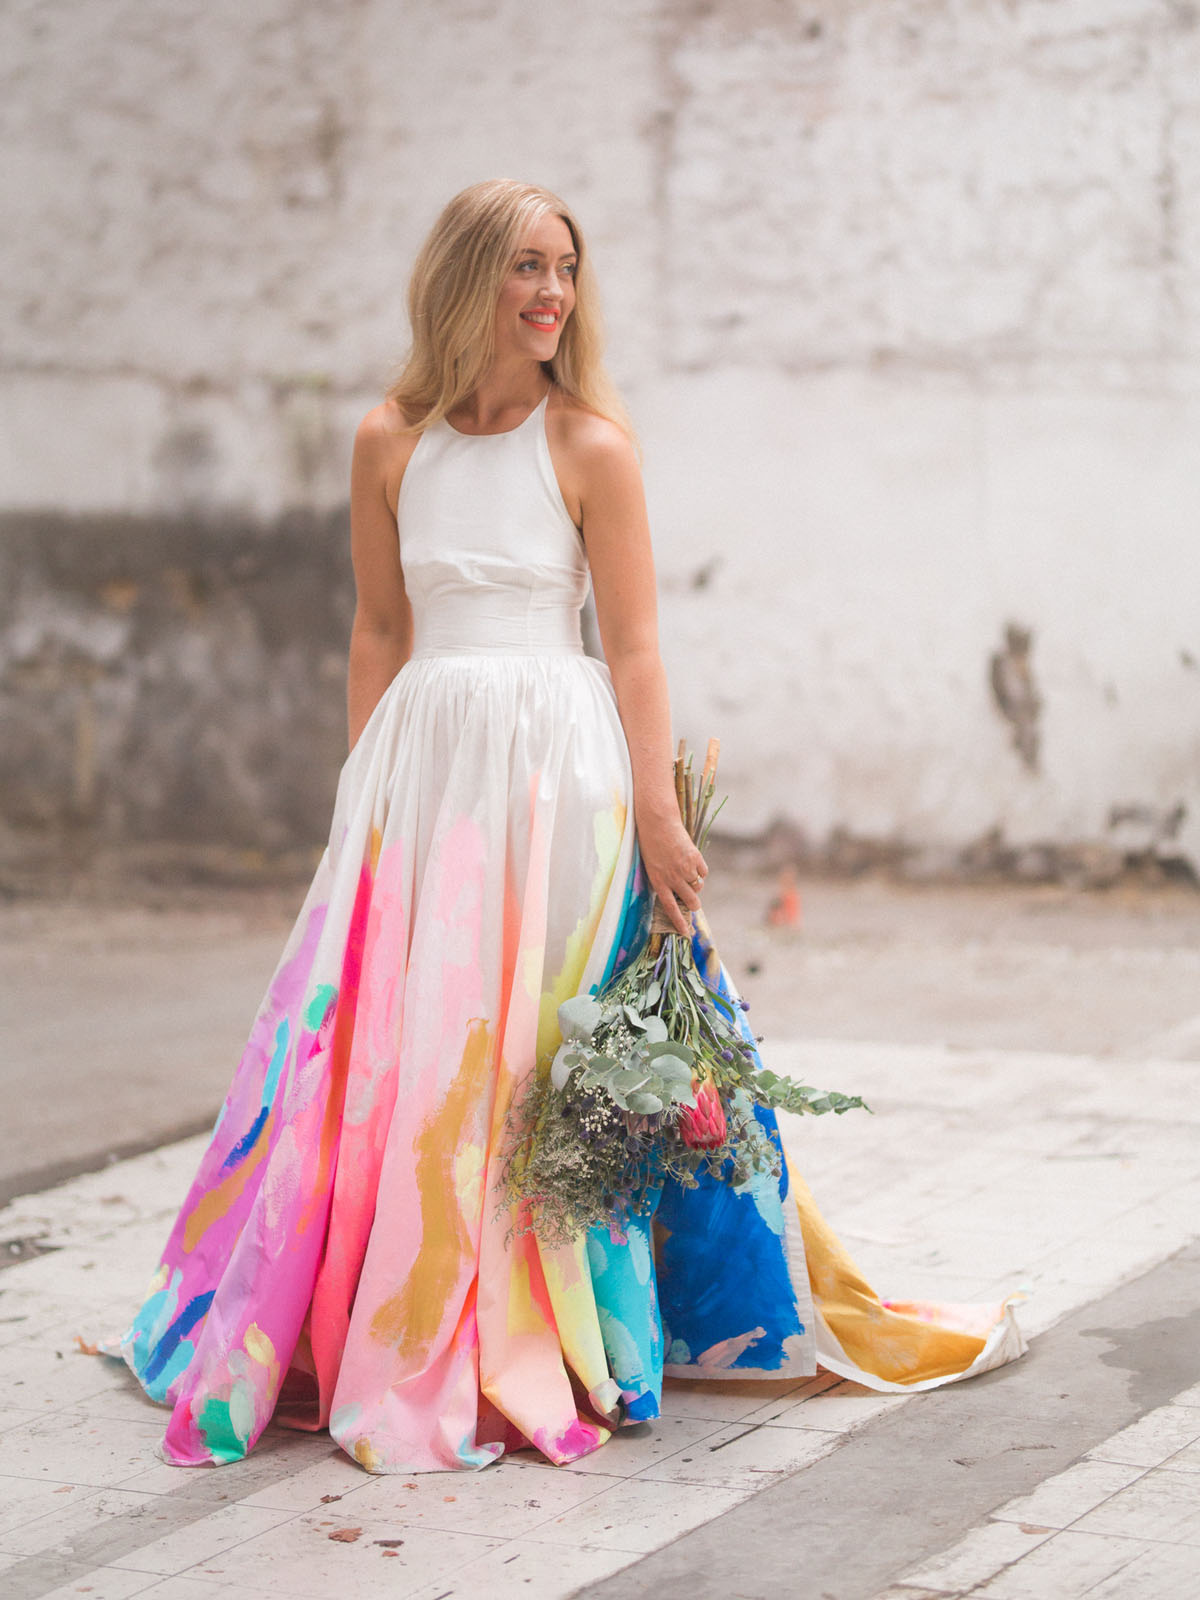 Casamento colorido: 10 maneiras de adicionar cor na decoração